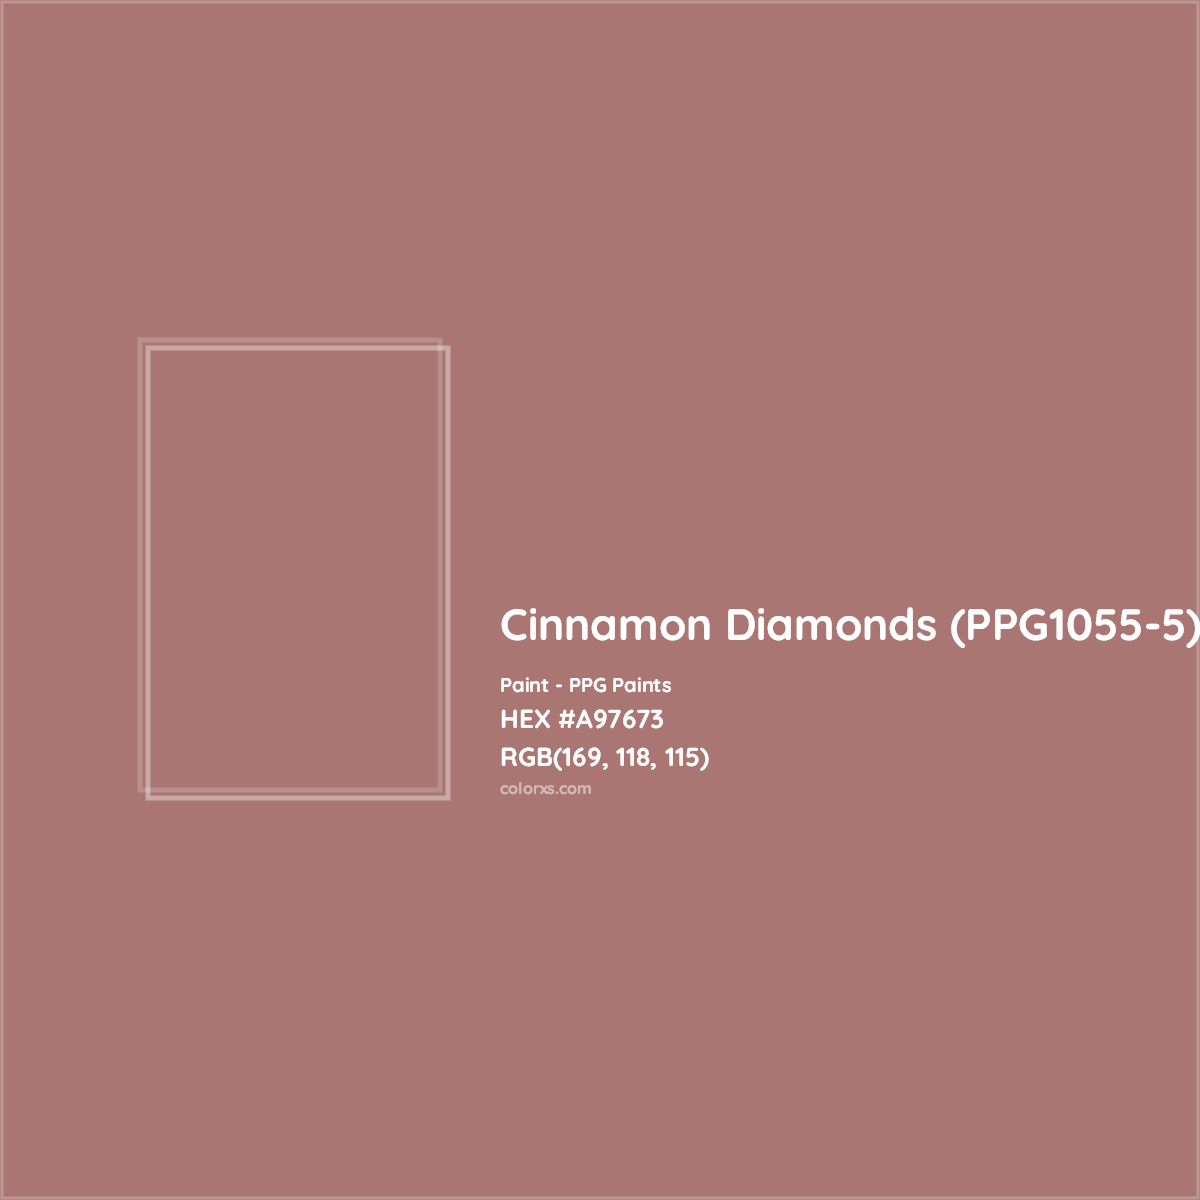 HEX #A97673 Cinnamon Diamonds (PPG1055-5) Paint PPG Paints - Color Code